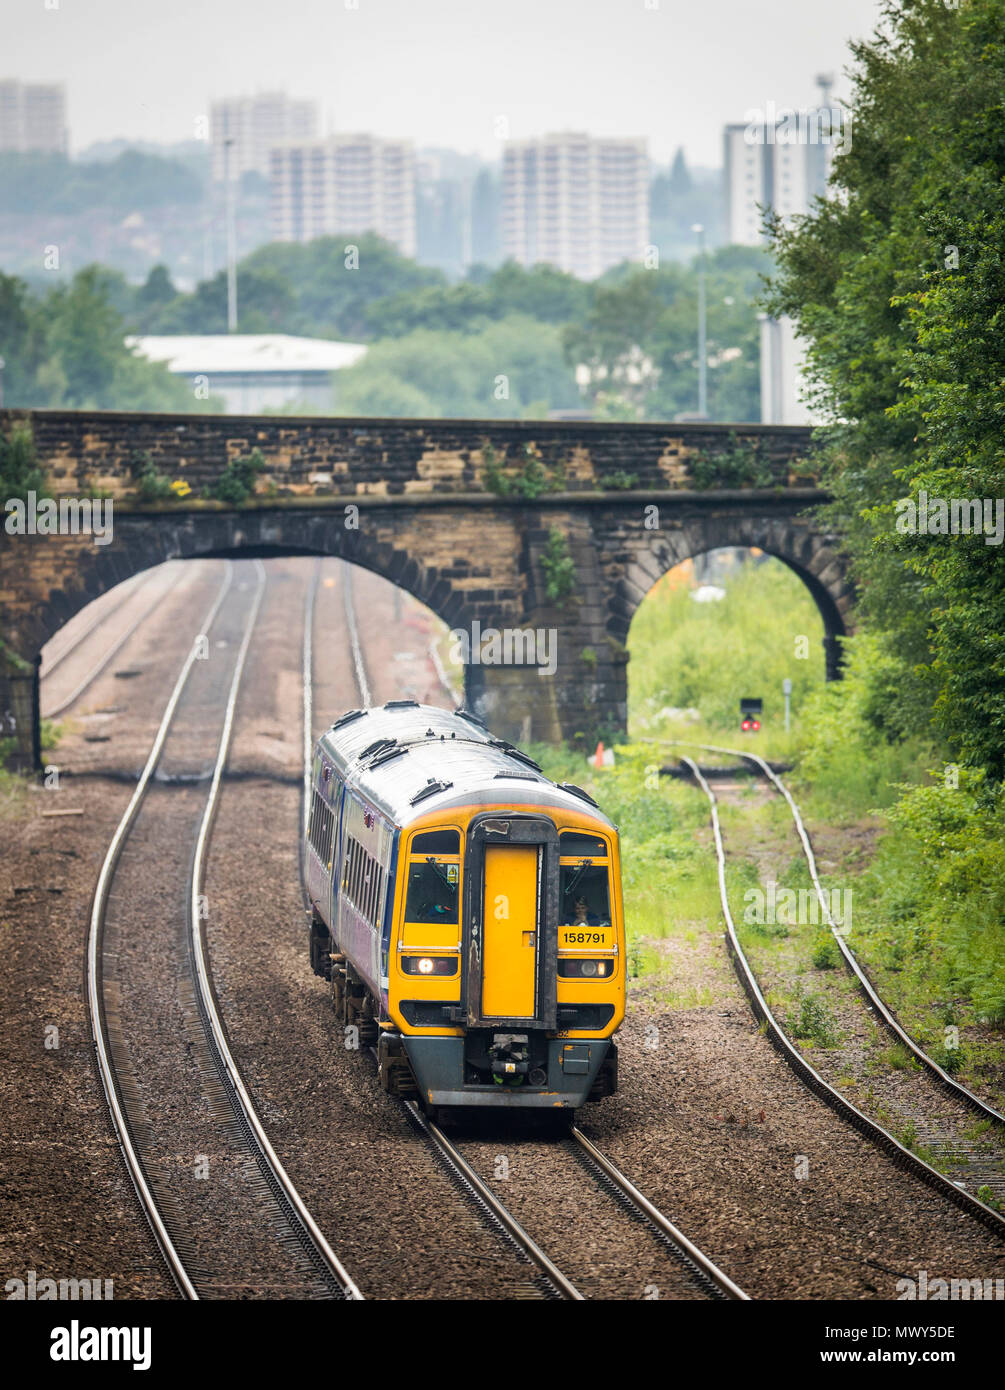 Ein Zug in Leeds als zugbetreiber Nördlichen 165 tägliche Services behauen bis Ende Juli Zuverlässigkeit inmitten von größeren Störungen zu verbessern. Stockfoto